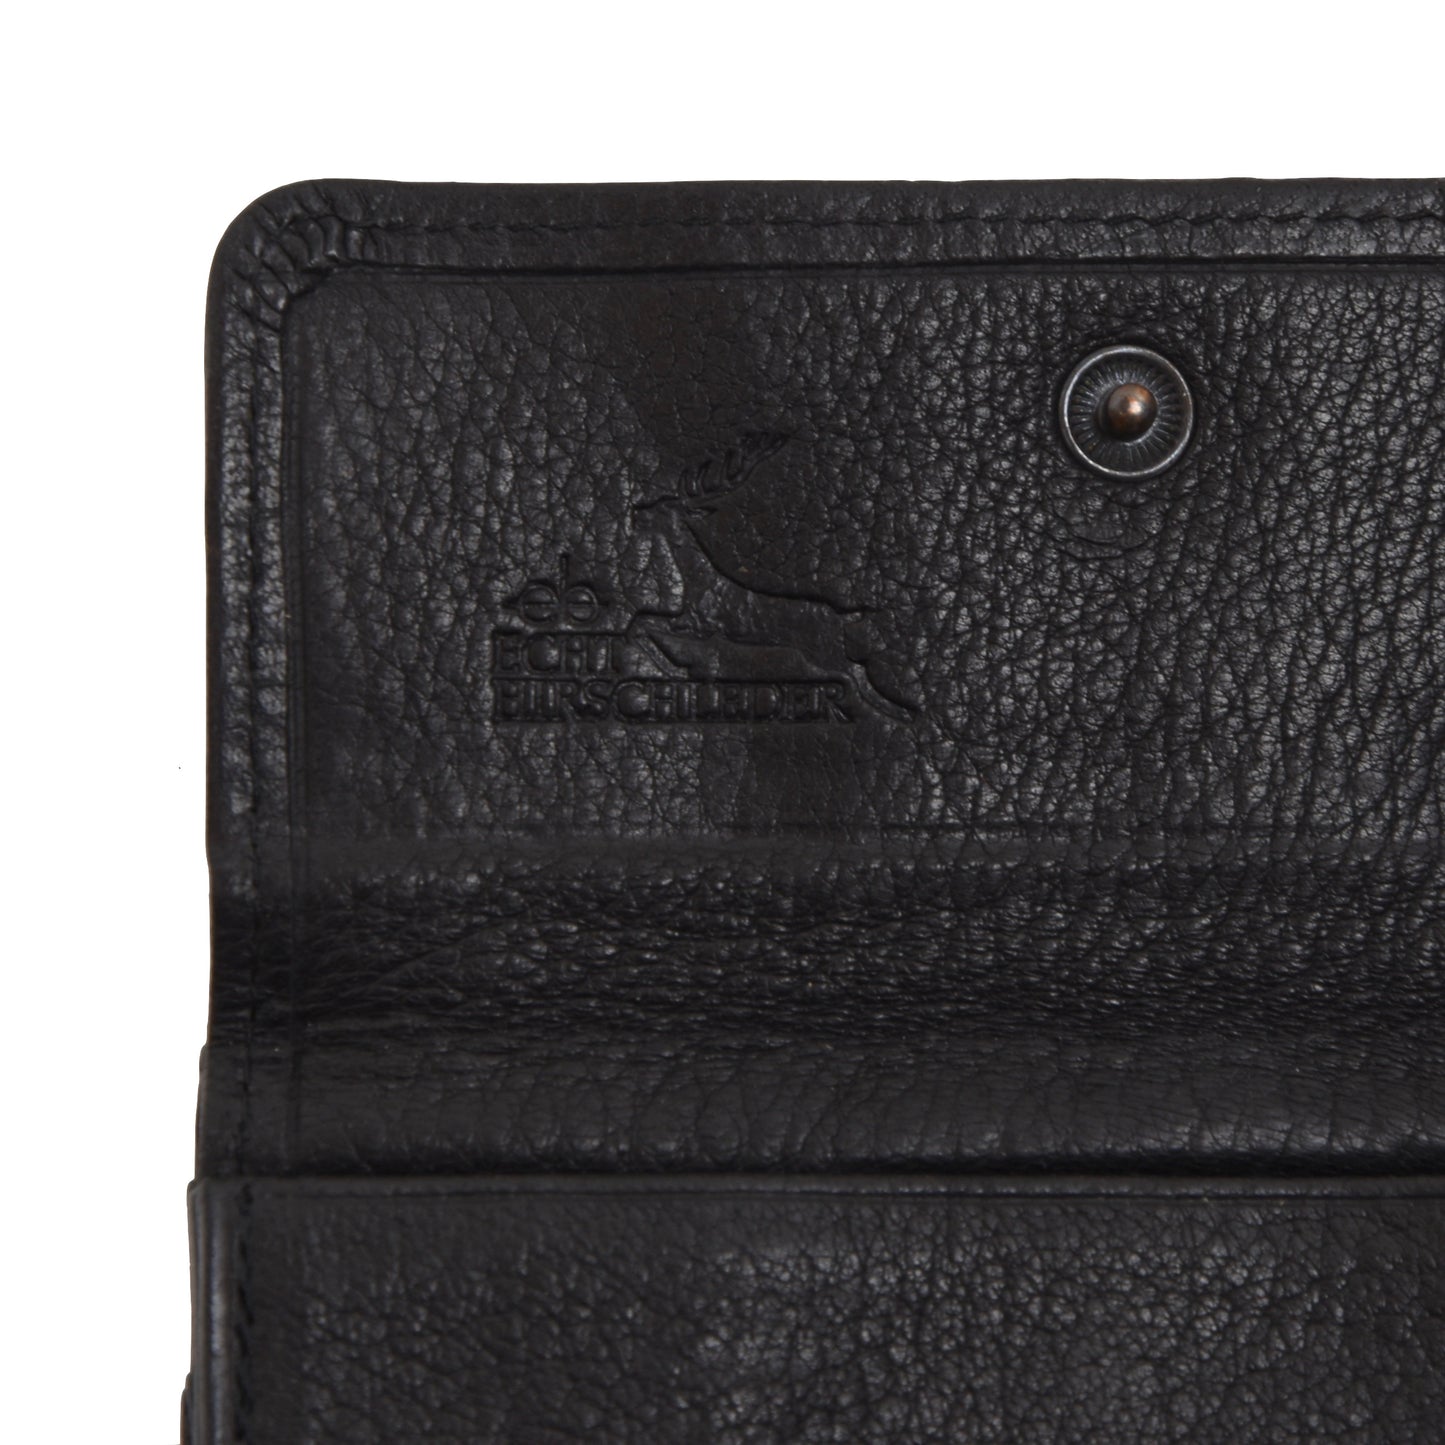 Becker Handmade Deerskin Wallet - Black